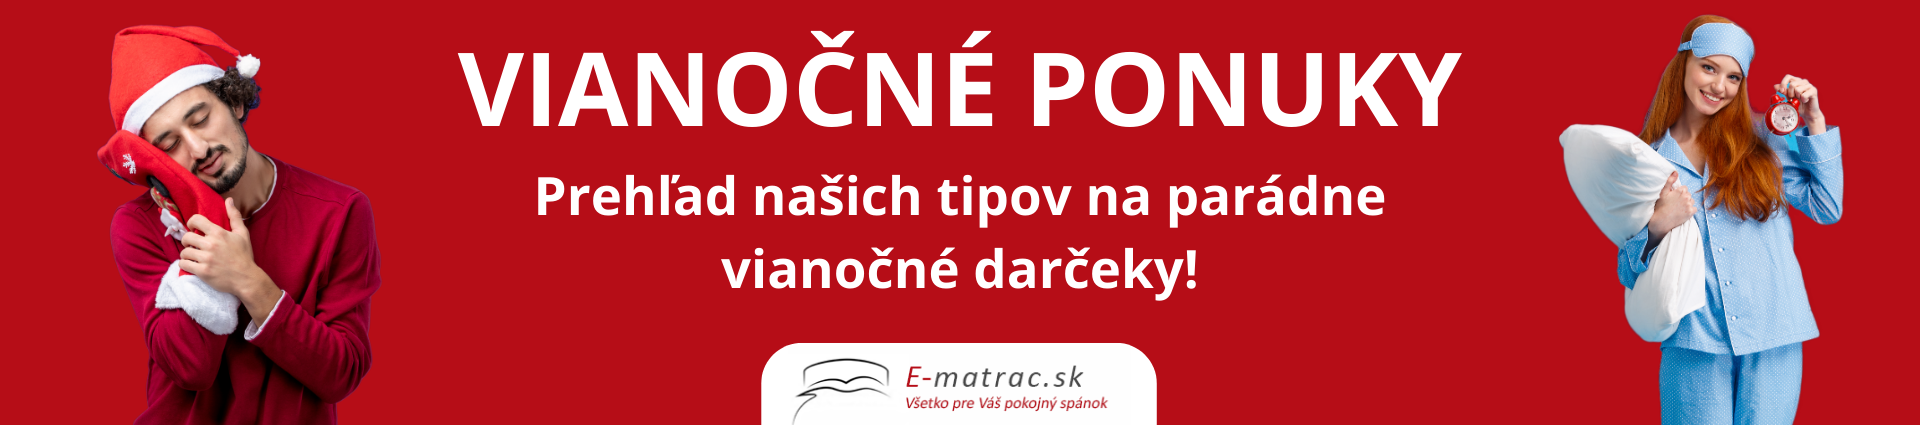 vianočné ponuky e-matrac.sk